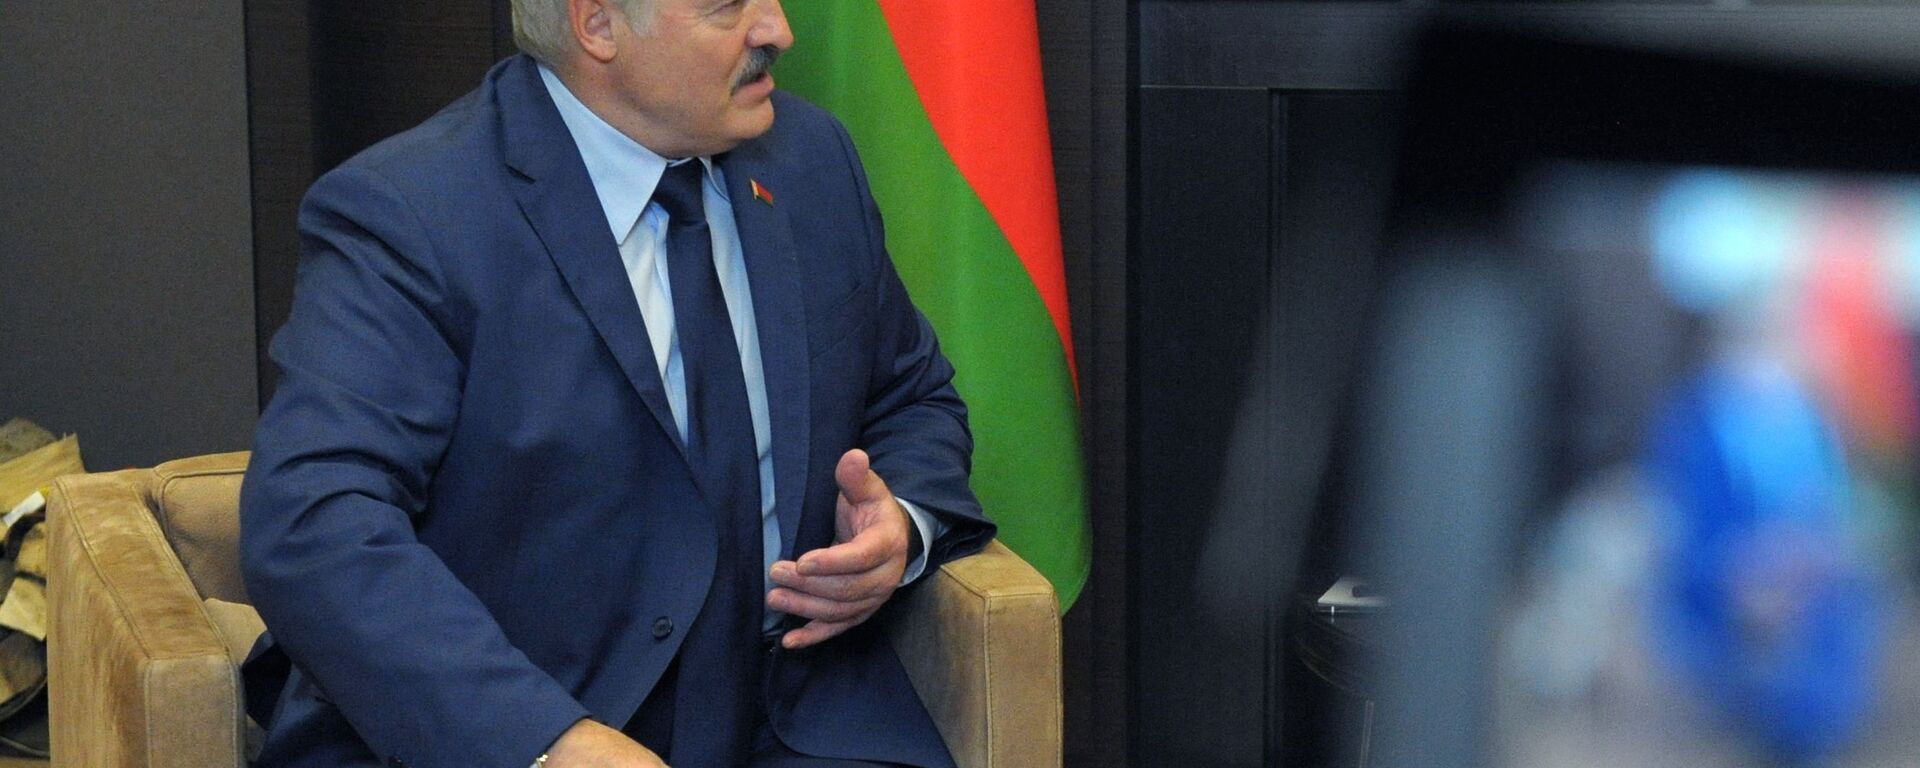 Председник Белорусије Александар Лукашенко - Sputnik Србија, 1920, 04.06.2021